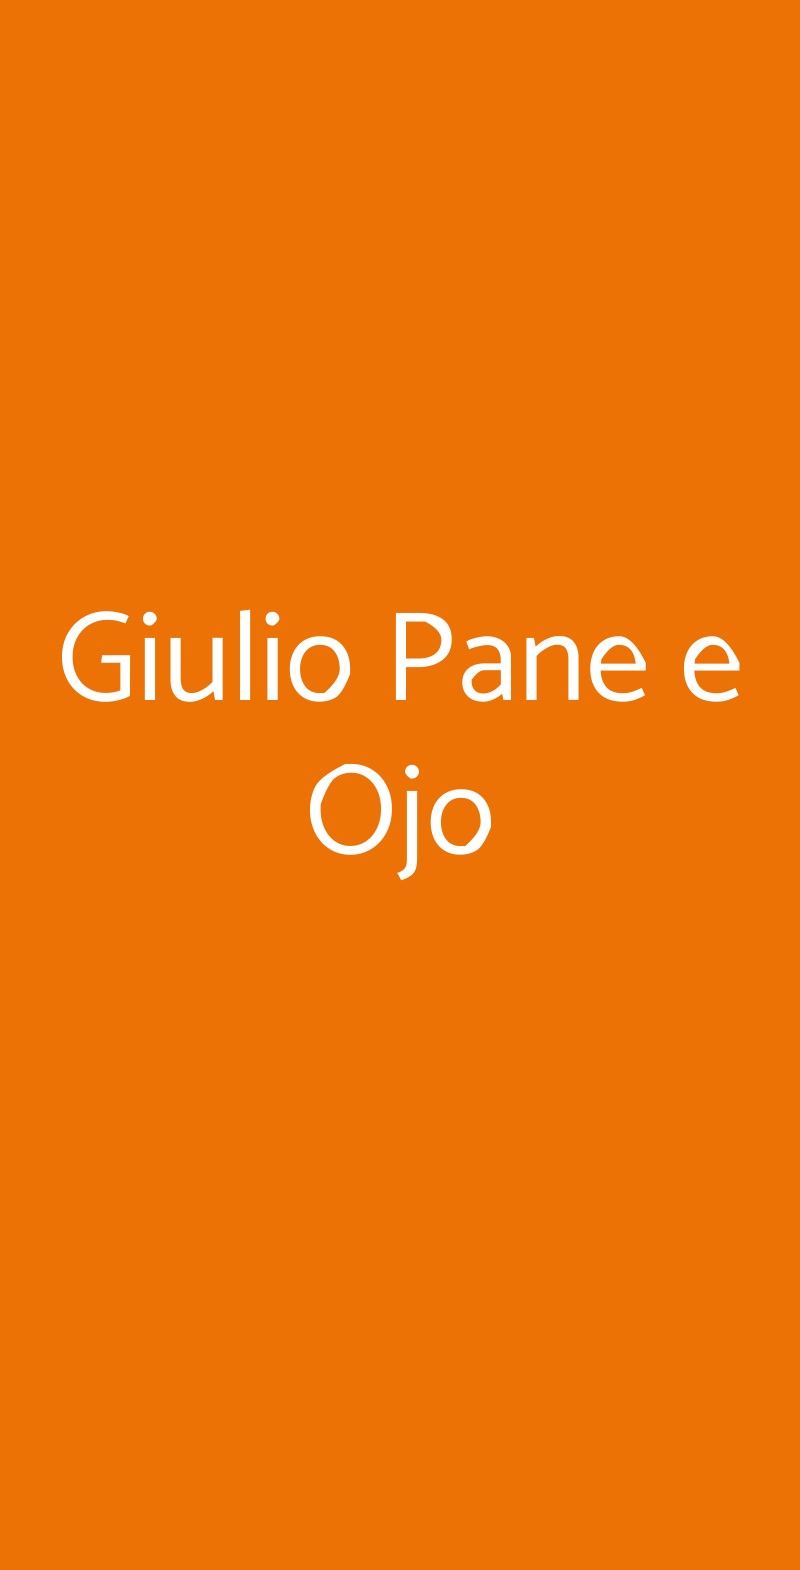 Giulio Pane e Ojo Milano menù 1 pagina